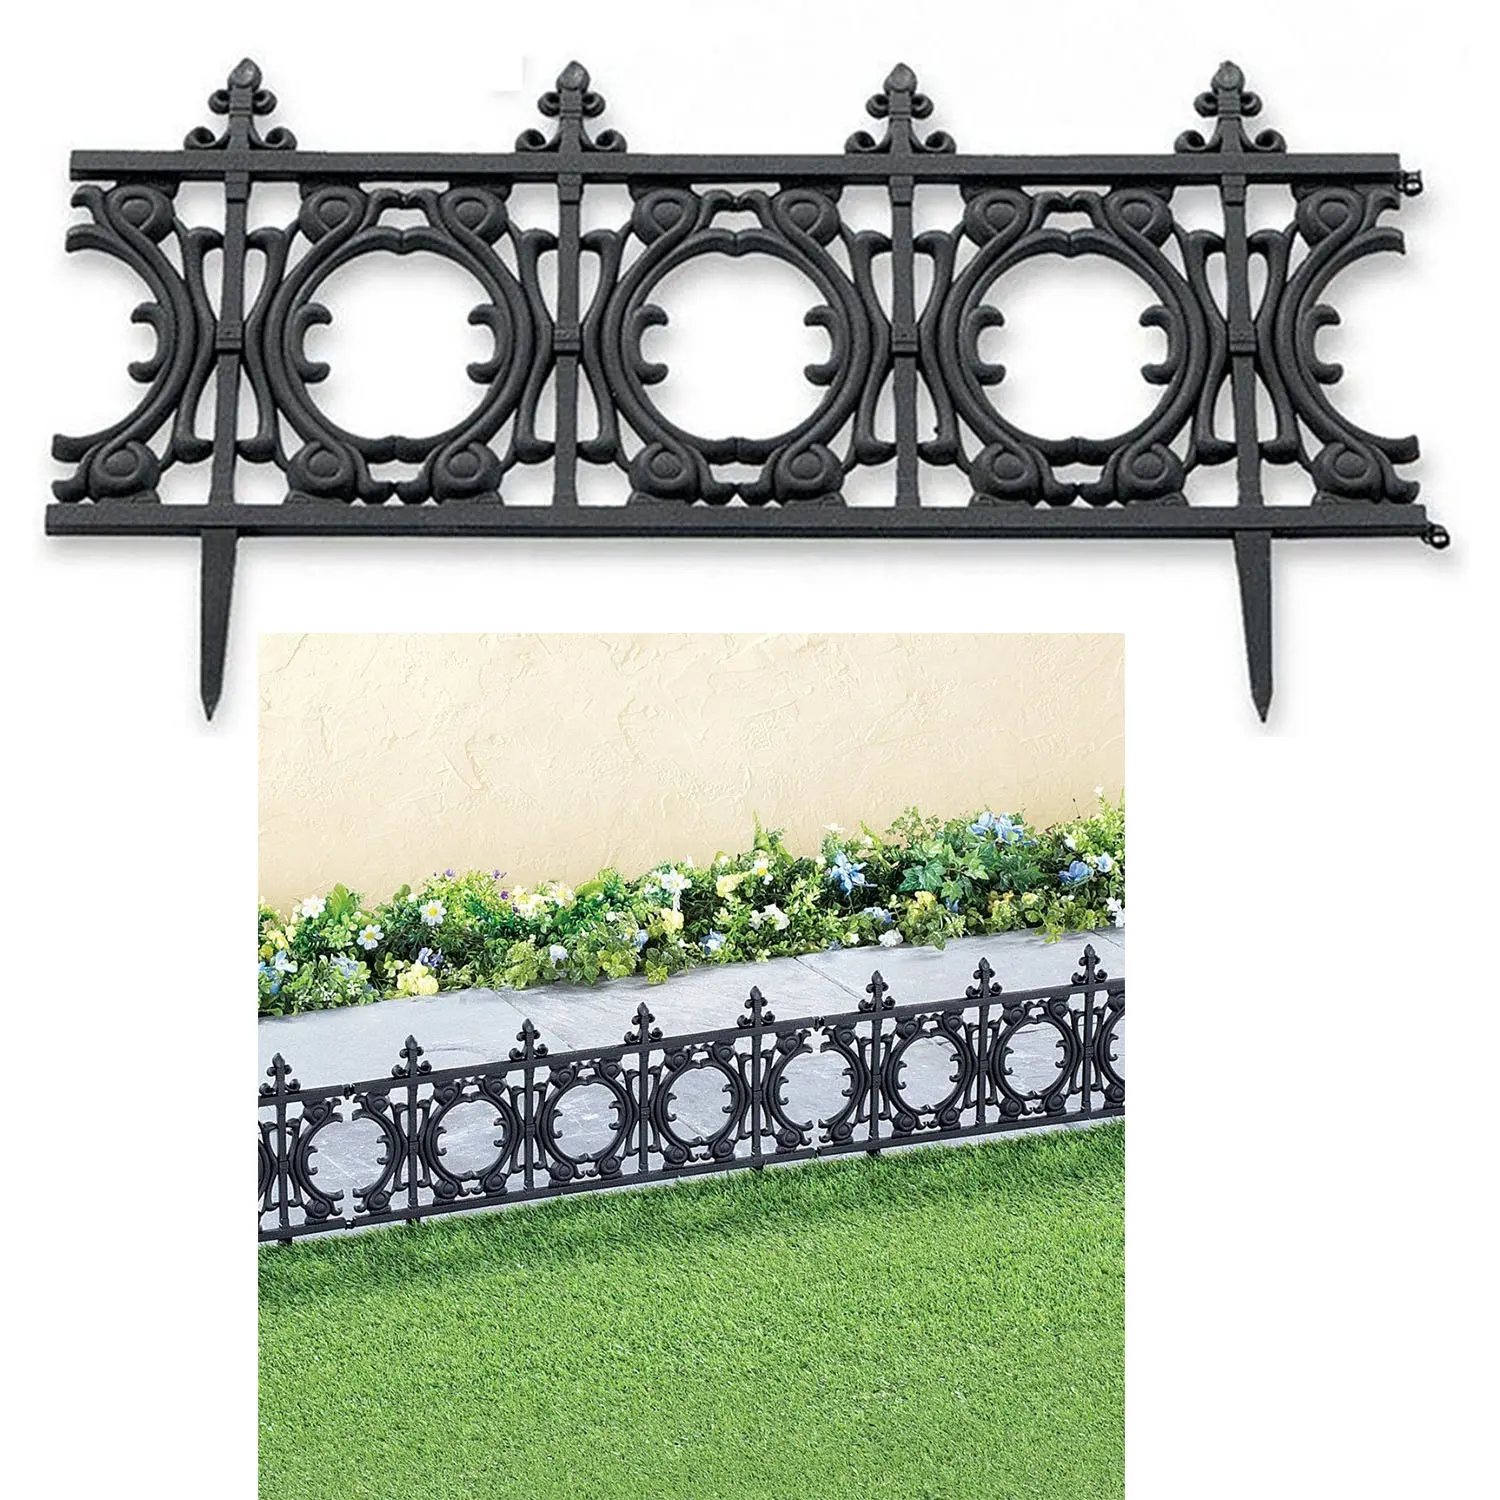 Molde de plástico do painel da borda da borda da jardinagem do gramado dos pp decorações